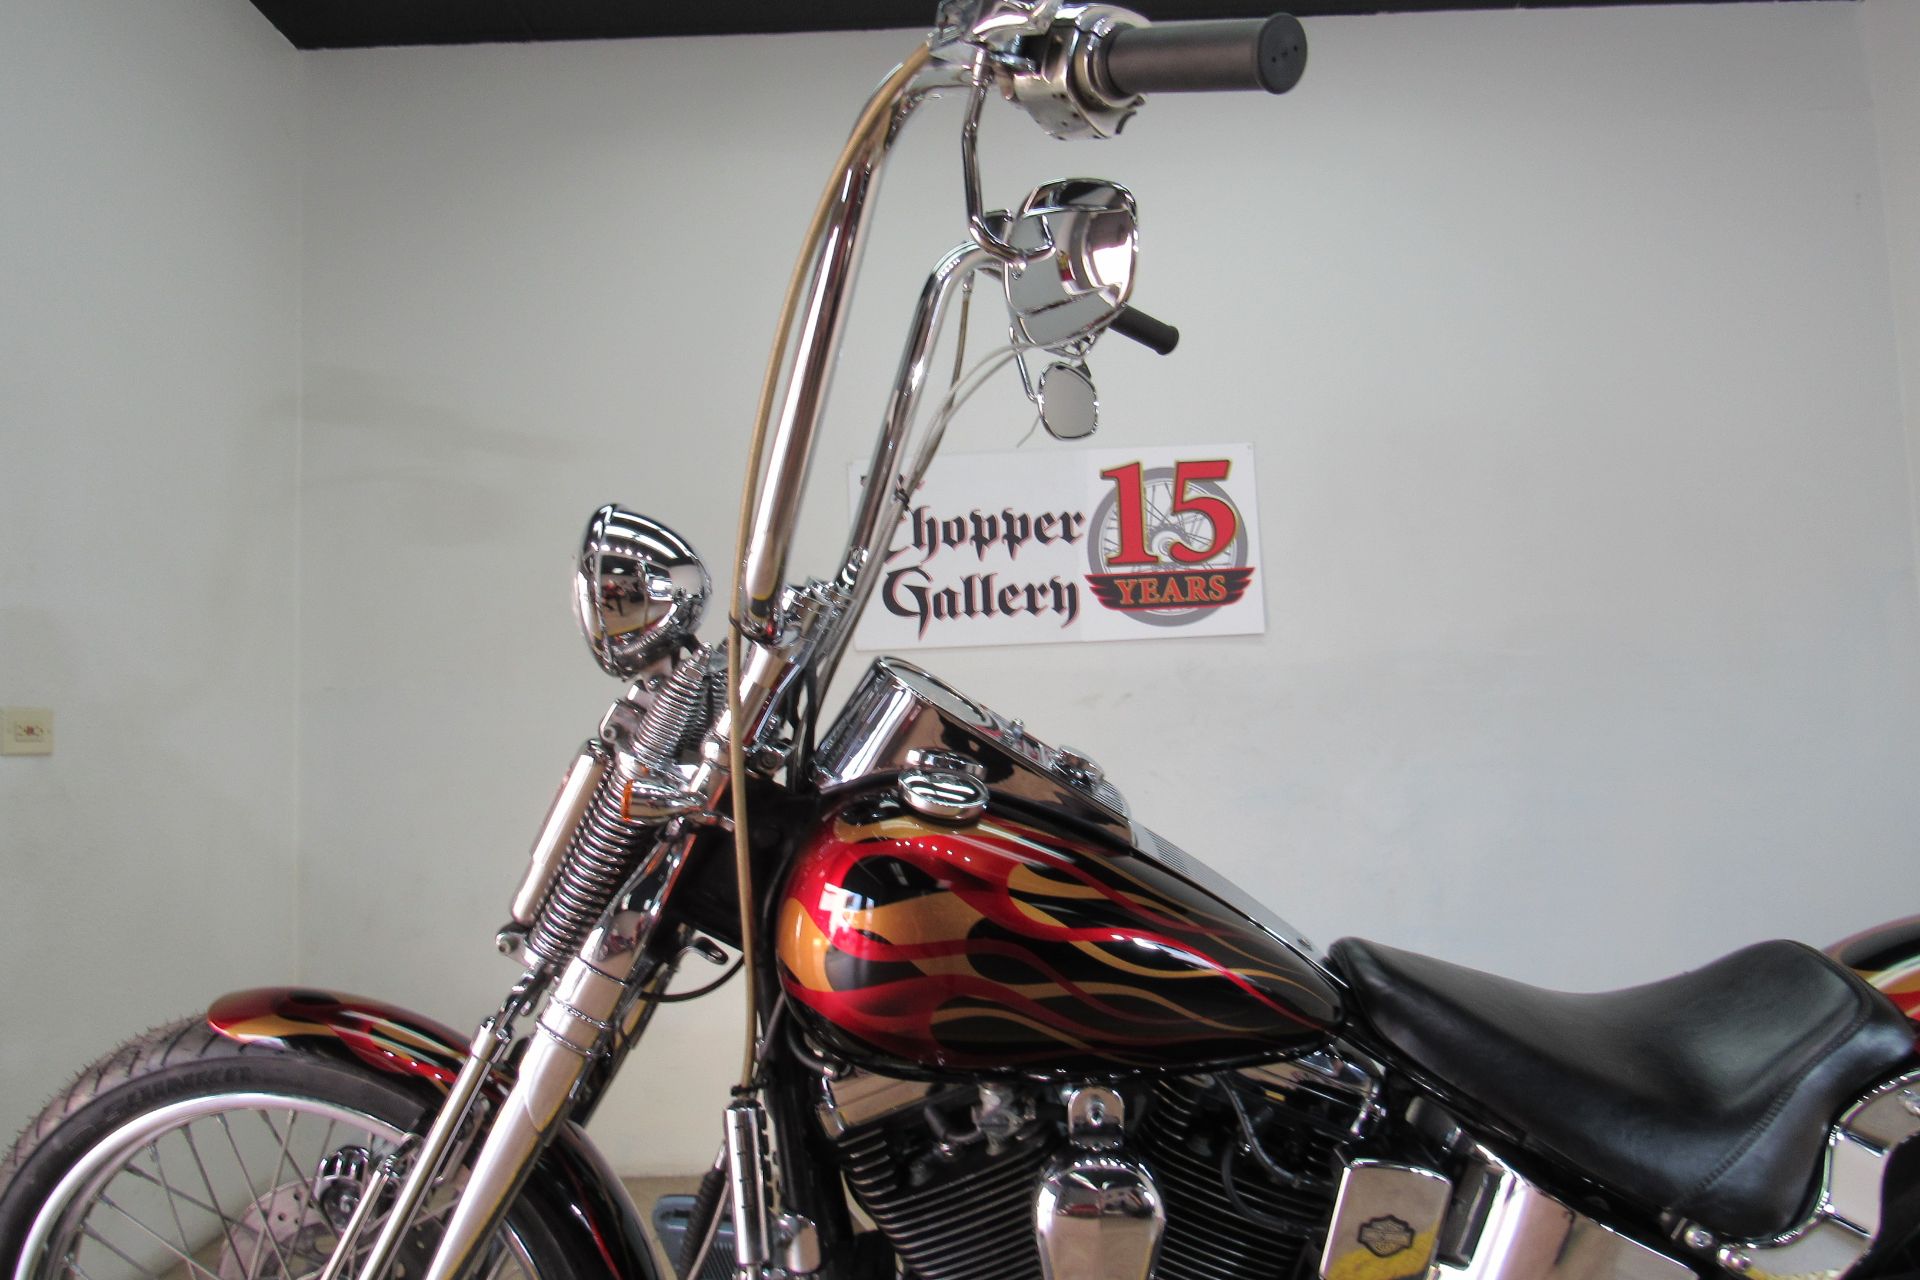 1992 Harley-Davidson Springer in Temecula, California - Photo 10